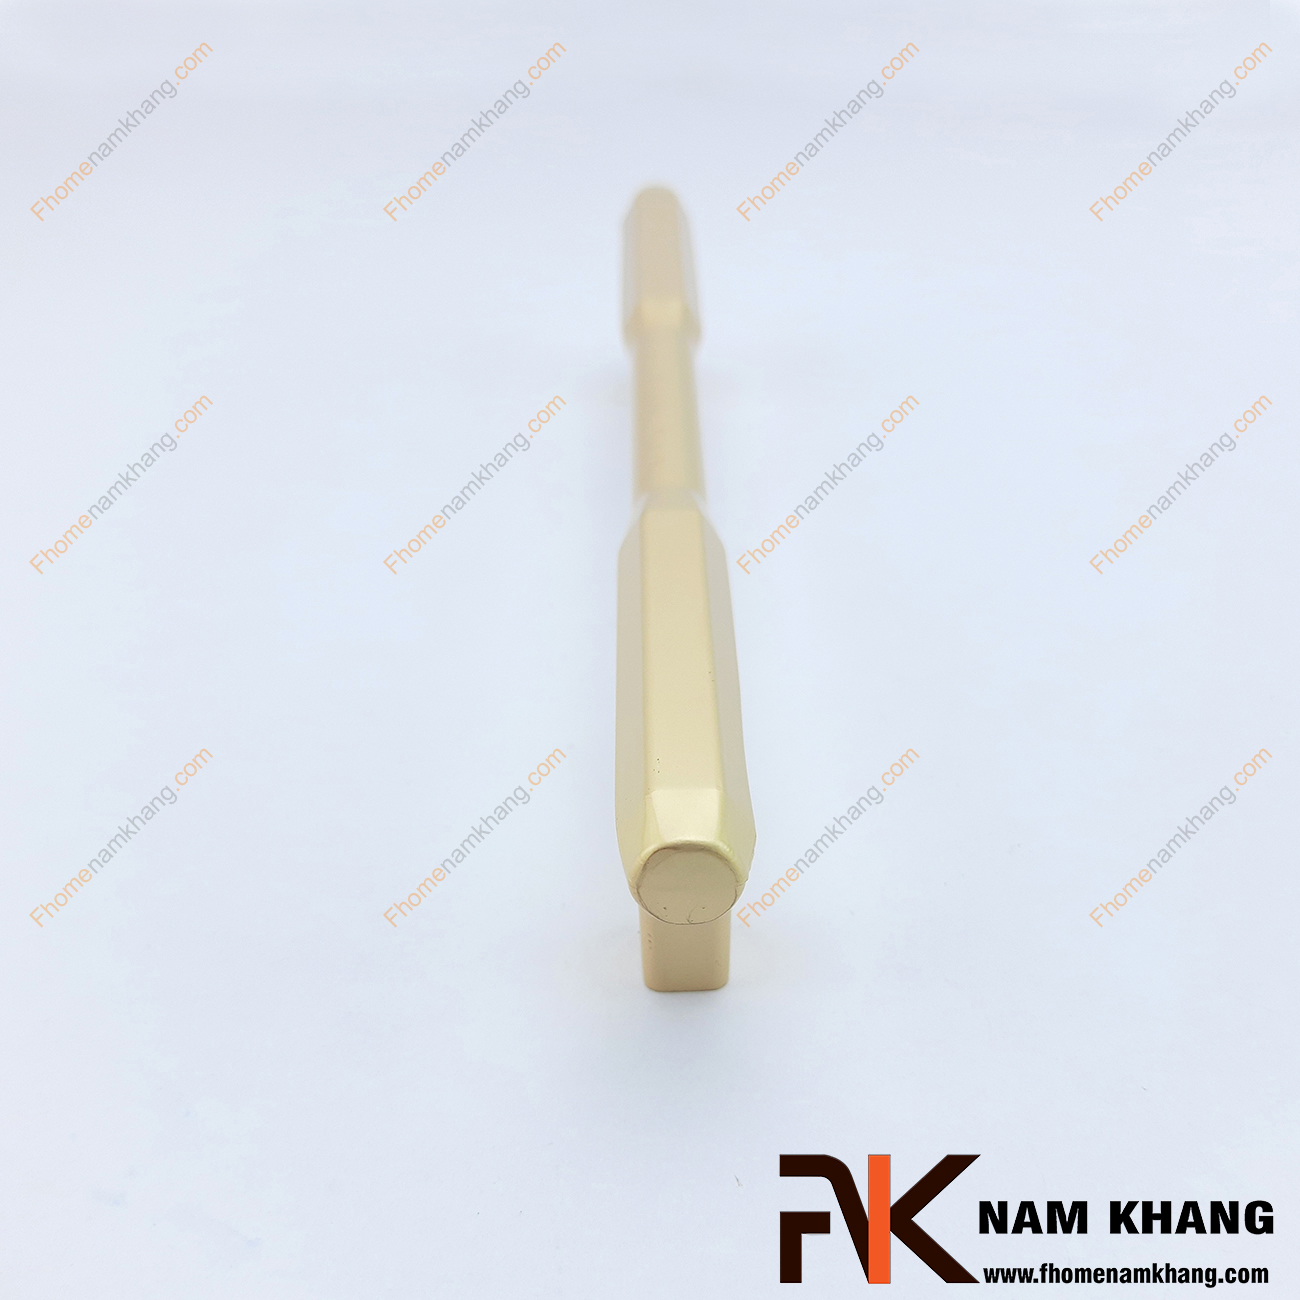 Thiết kế tay nắm tủ màu vàng NK315 là một dạng tay nắm tủ thanh vuông lục giác được xử lý bo các góc cạnh nhẹ nhàng mềm mại.